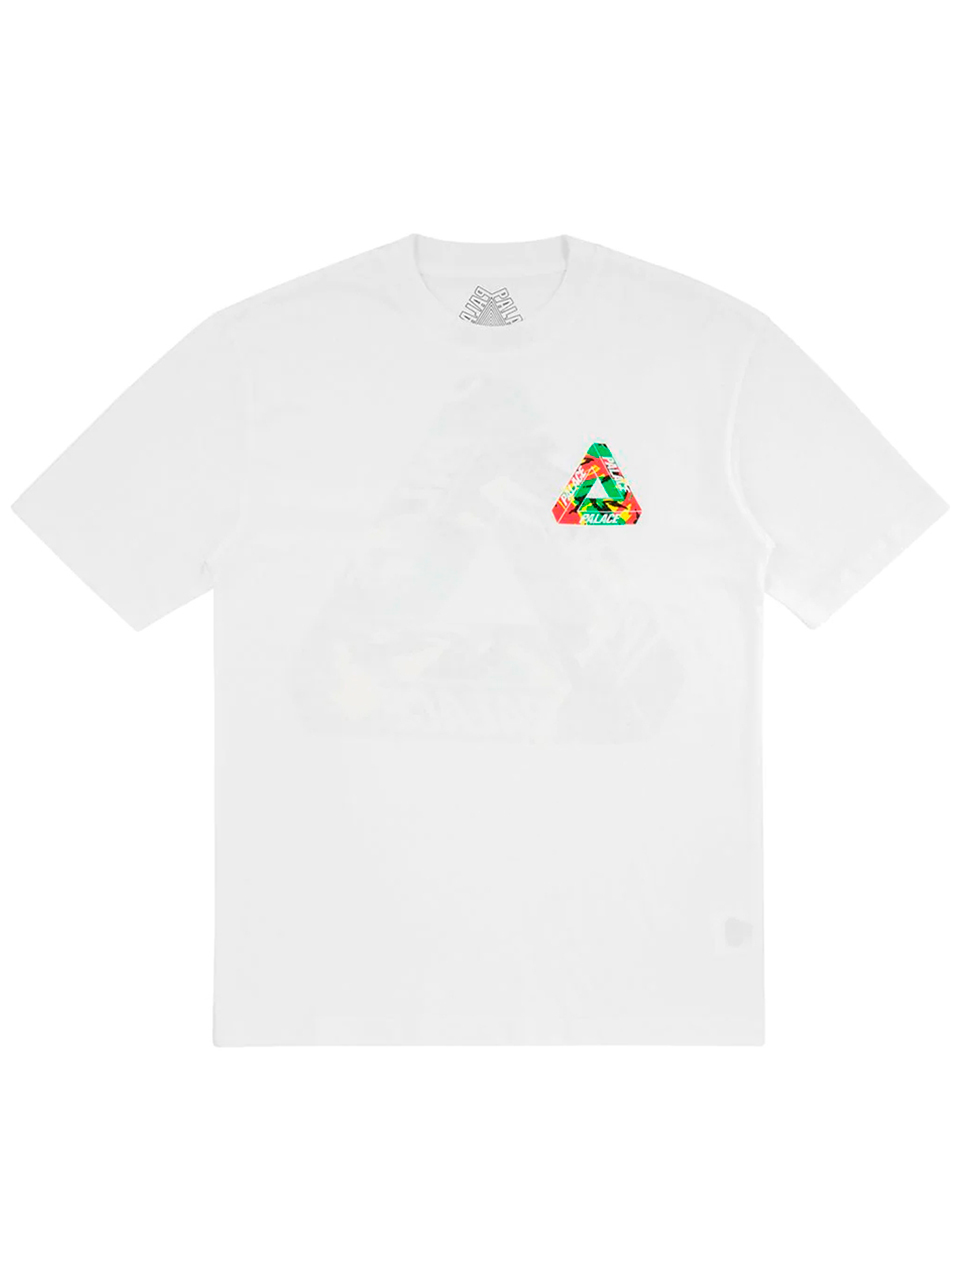 Imagem de: Camiseta Palace Branca com Logo Camo